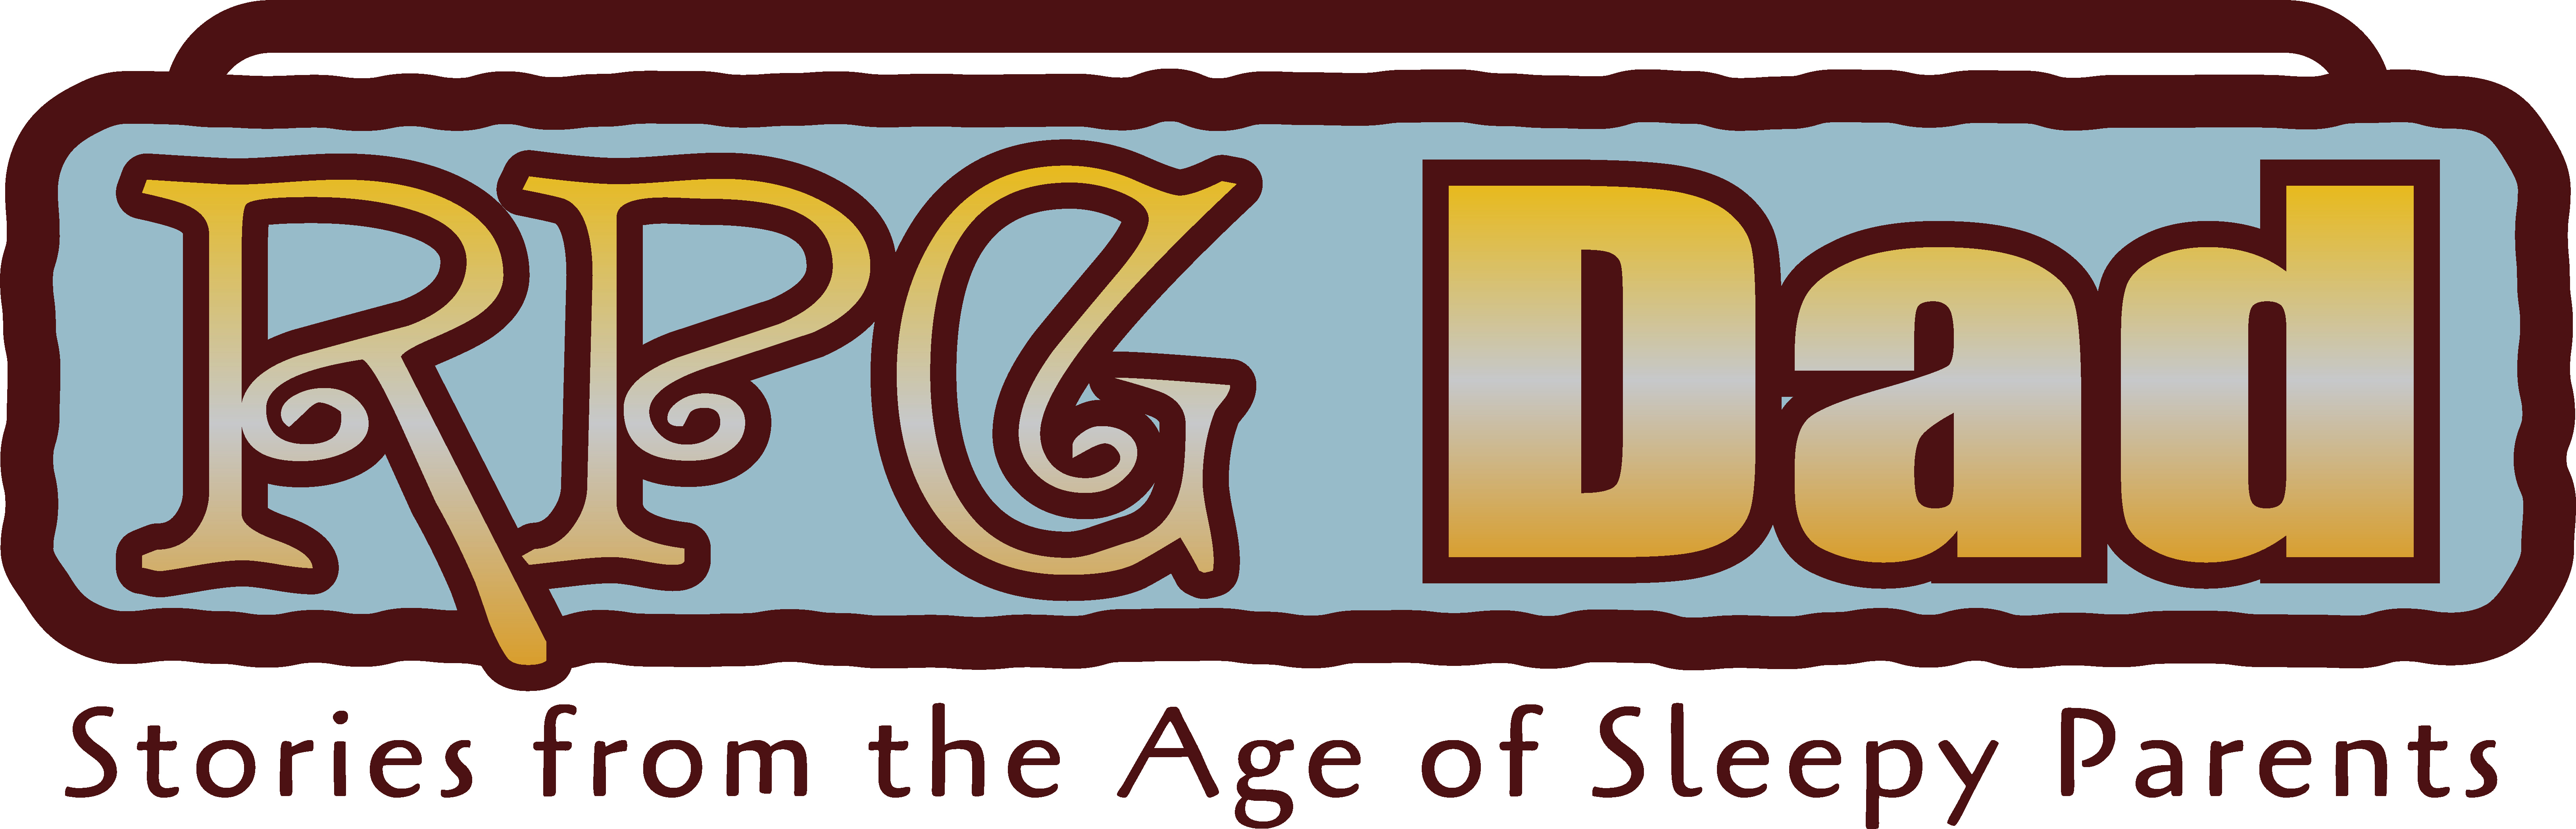 RPG Dad logo -fantasy color